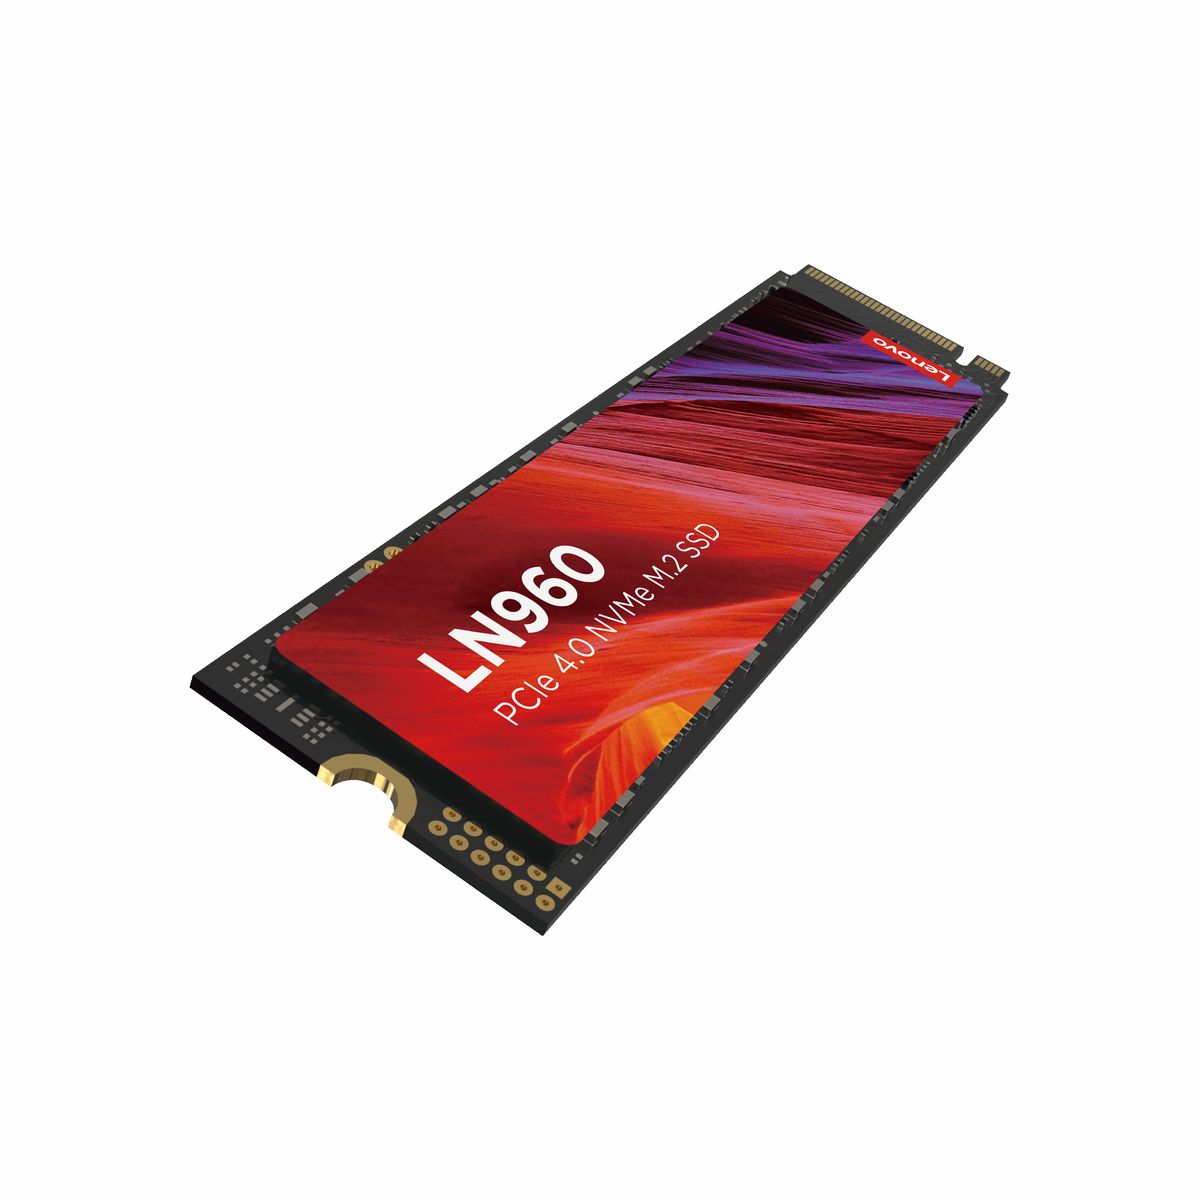 UNIDAD SSD LENOVO LN960 4TB M.2 NVME GEN4 7400MB/S (5SD1N53071)